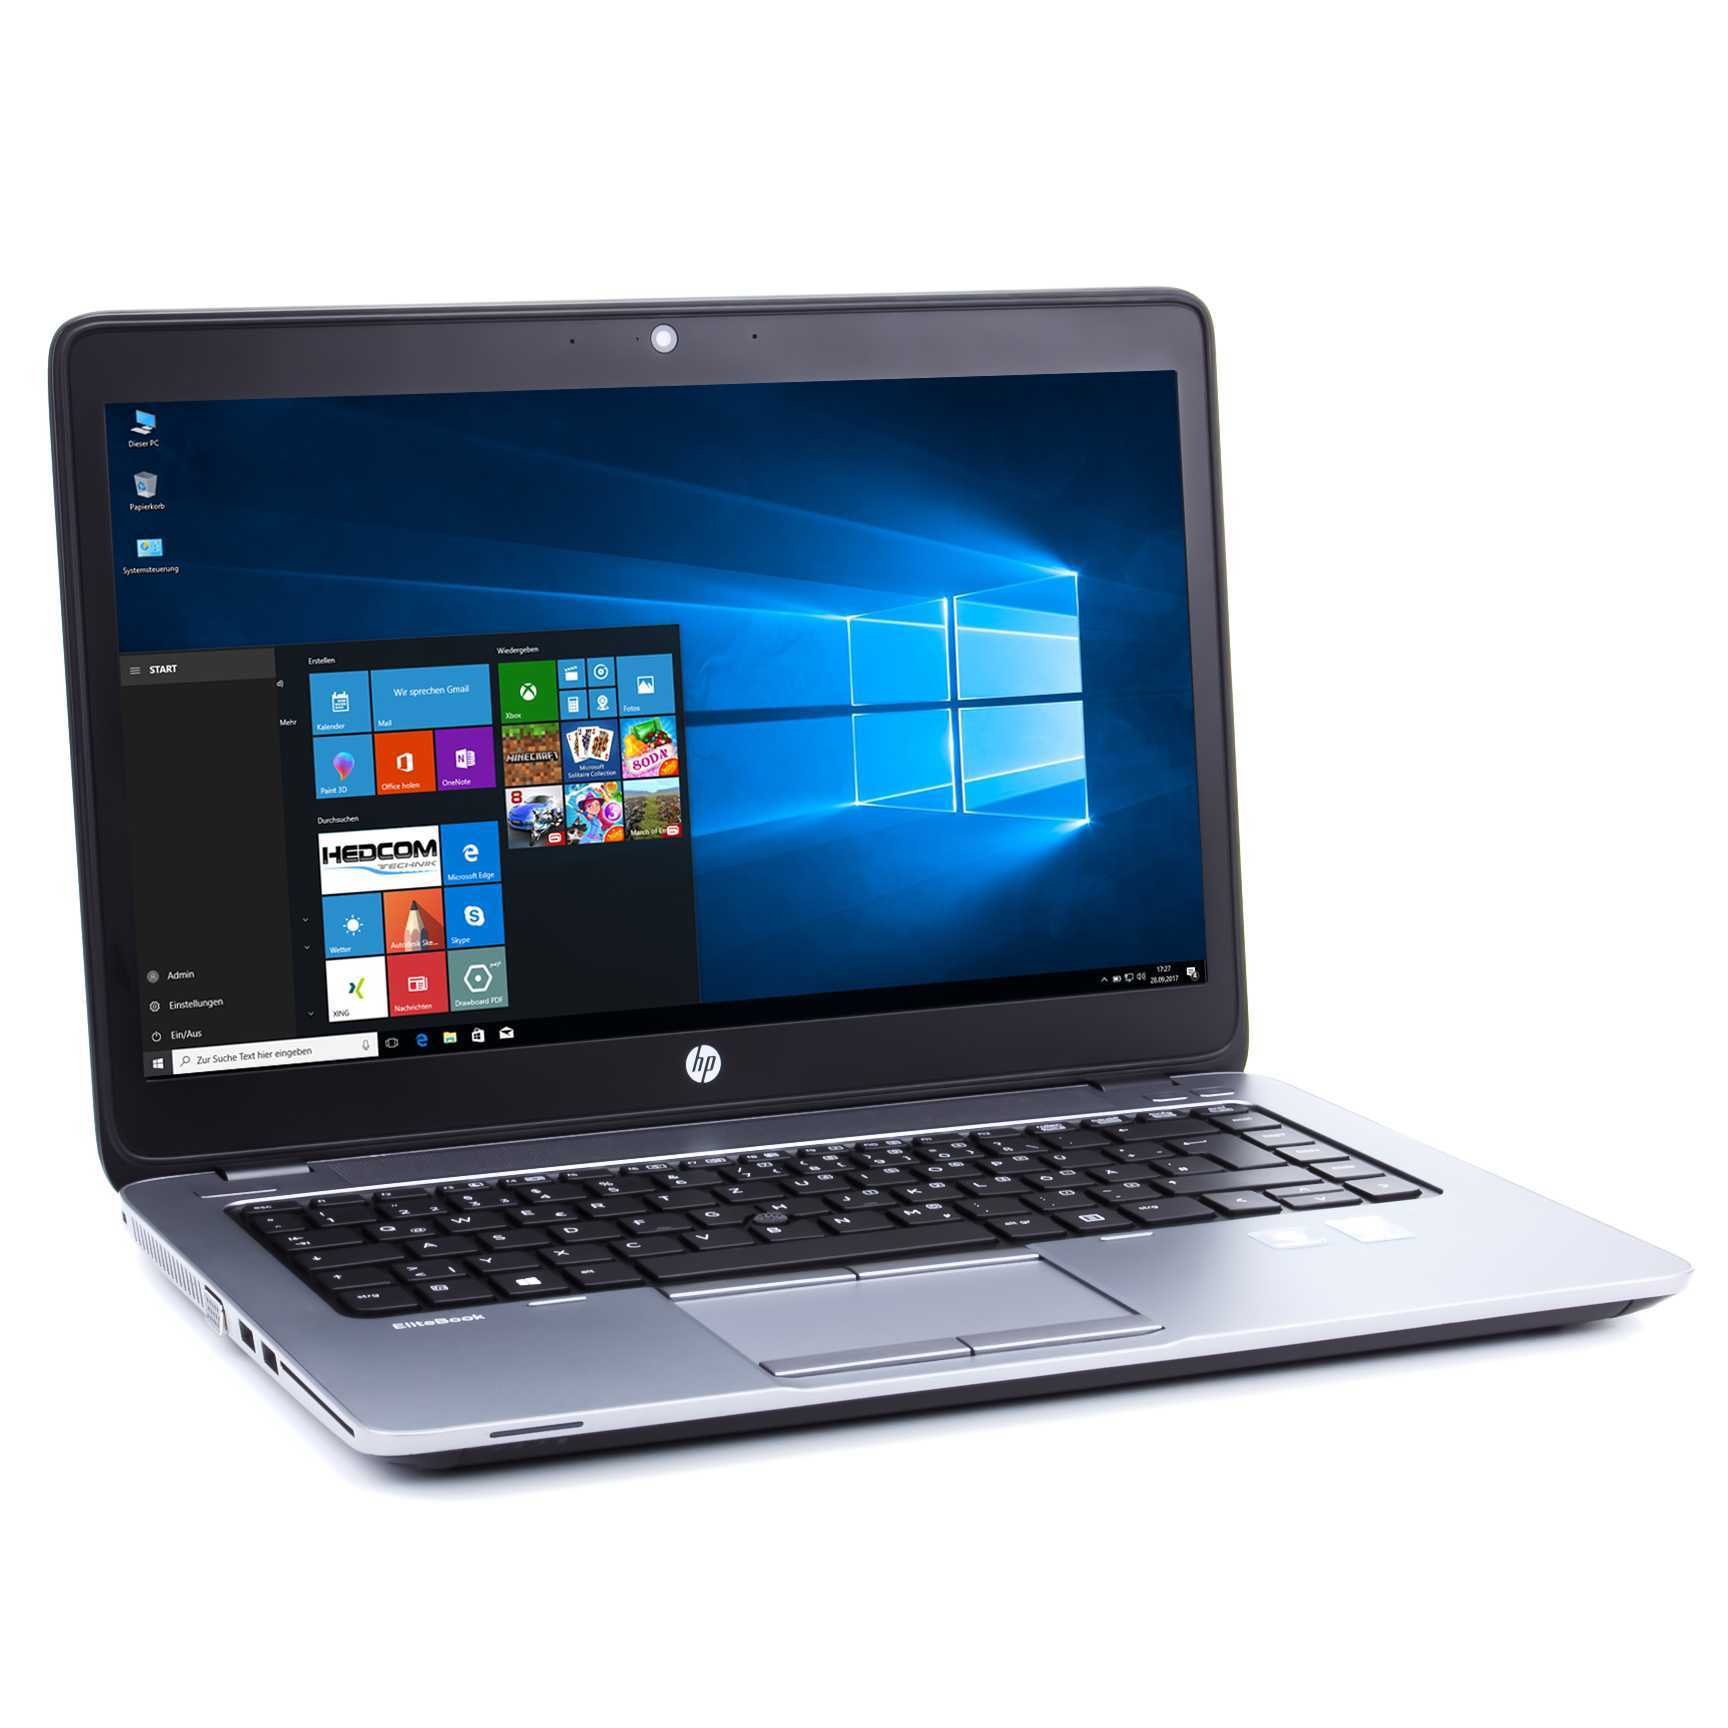 Hp elitebook 850 g5, обзор новой модели бизнес-ноутбука